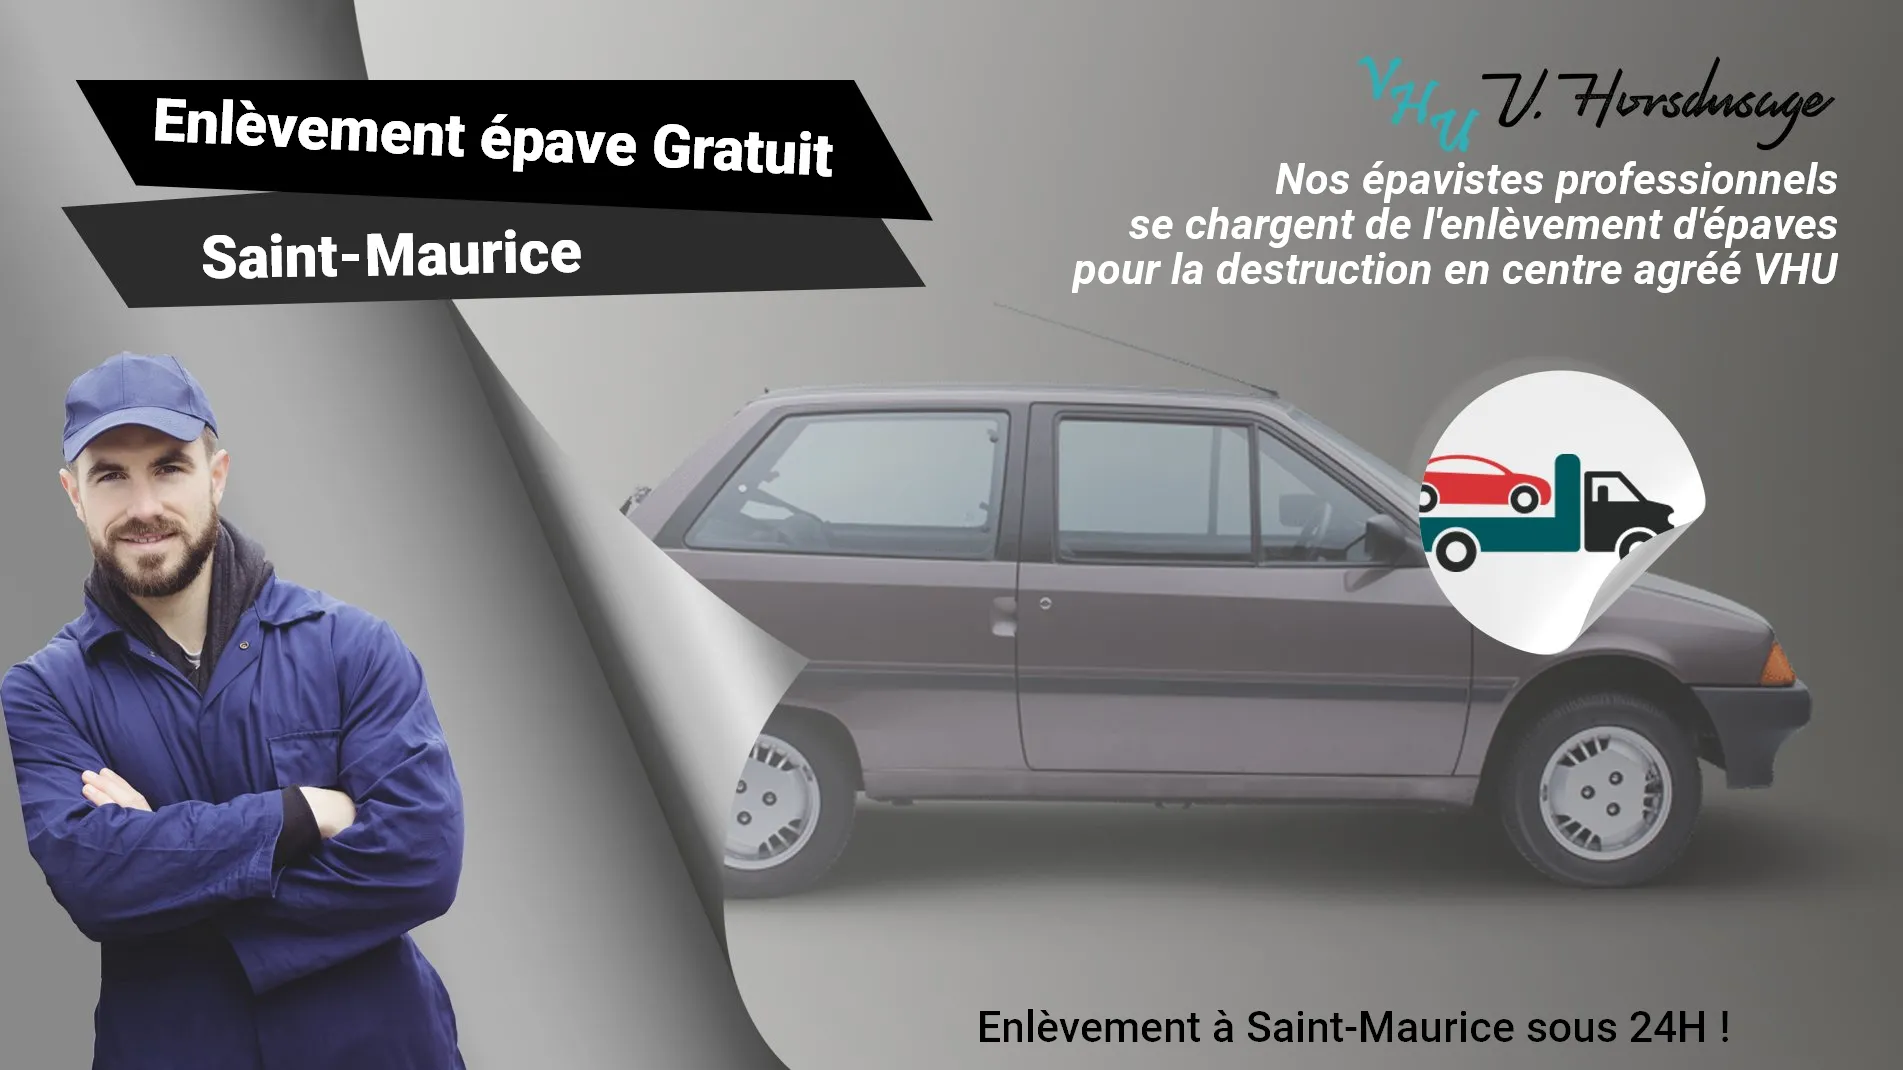 Pour un enlèvement gratuit à Saint-Maurice, contactez nos épavistes agréé VHU